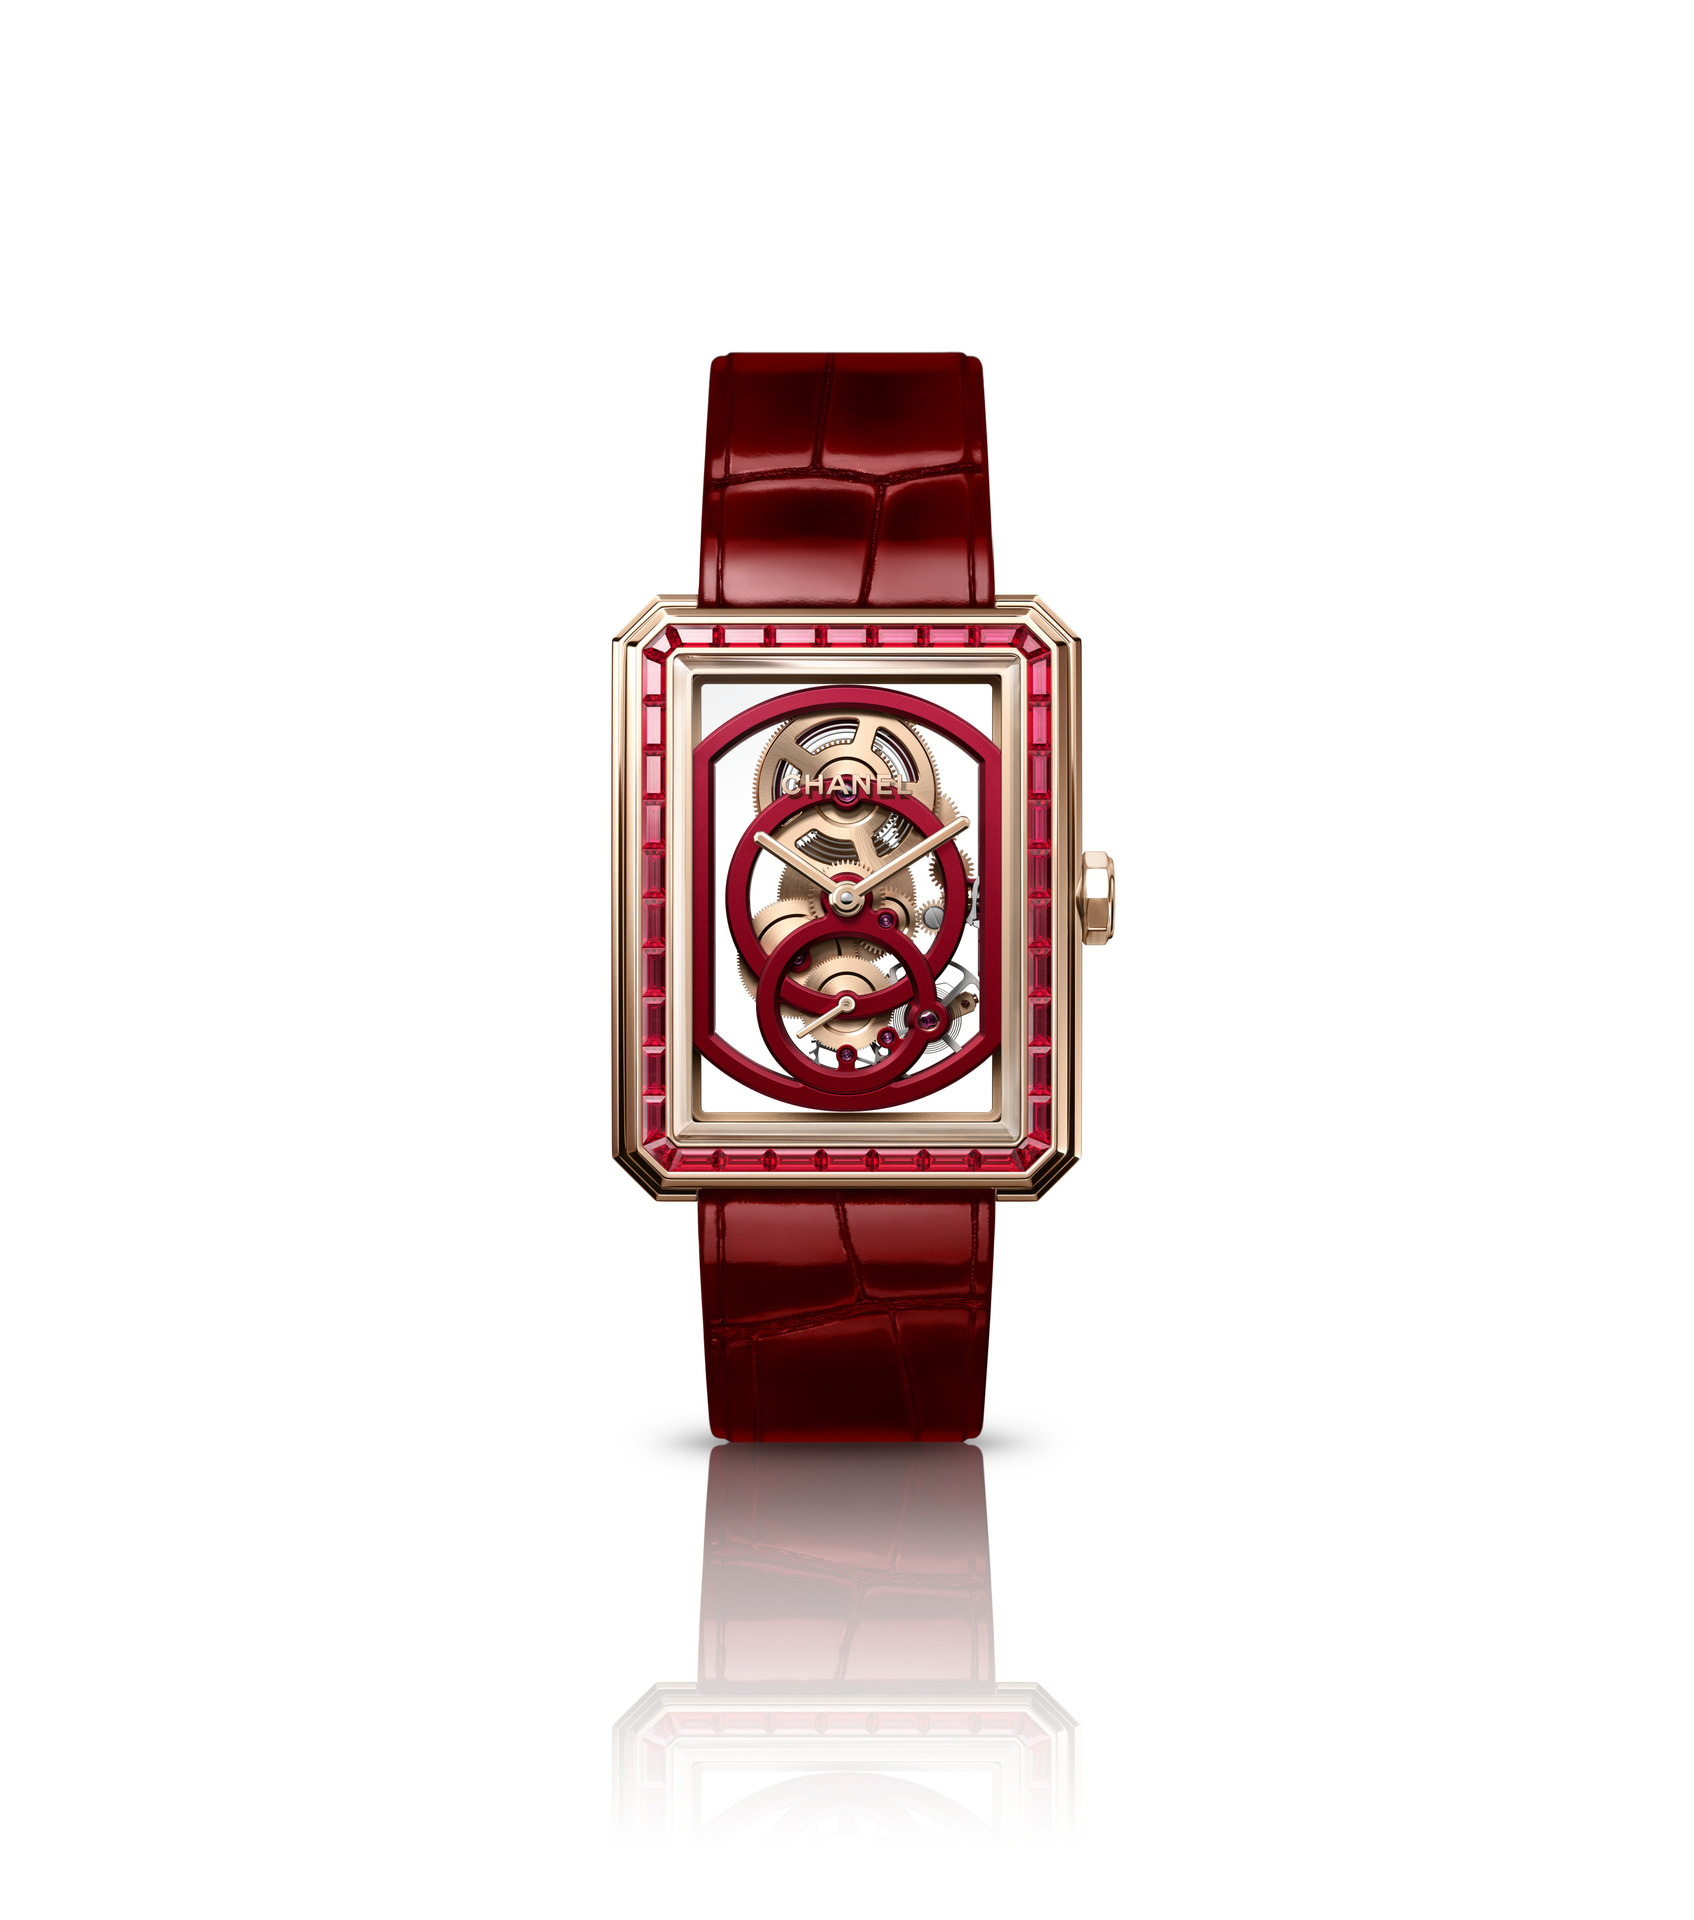 Часы Boy.Friend Skeleton Red Edition, Chanel